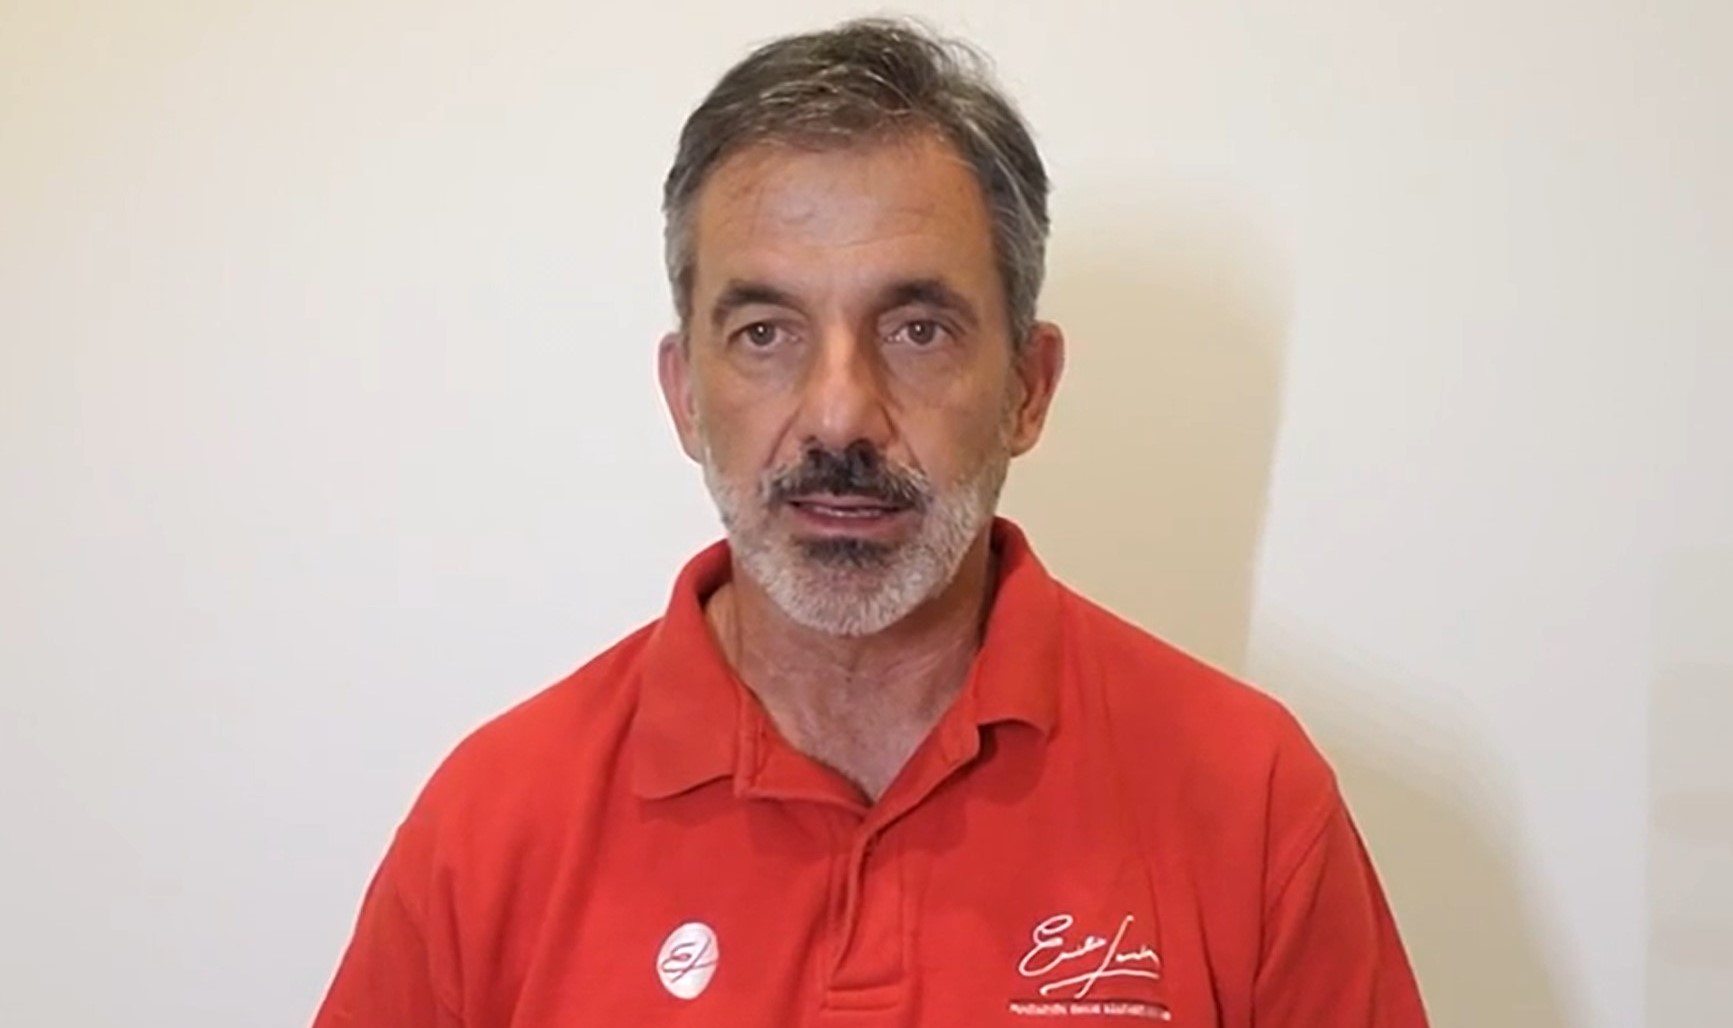 Image for Emilio Sánchez Vicario, Presidente de Honor de la FESV, se suma a la campaña de crowfunding para la realización y compra de material sanitario del Club Santa Clara (Sevilla).